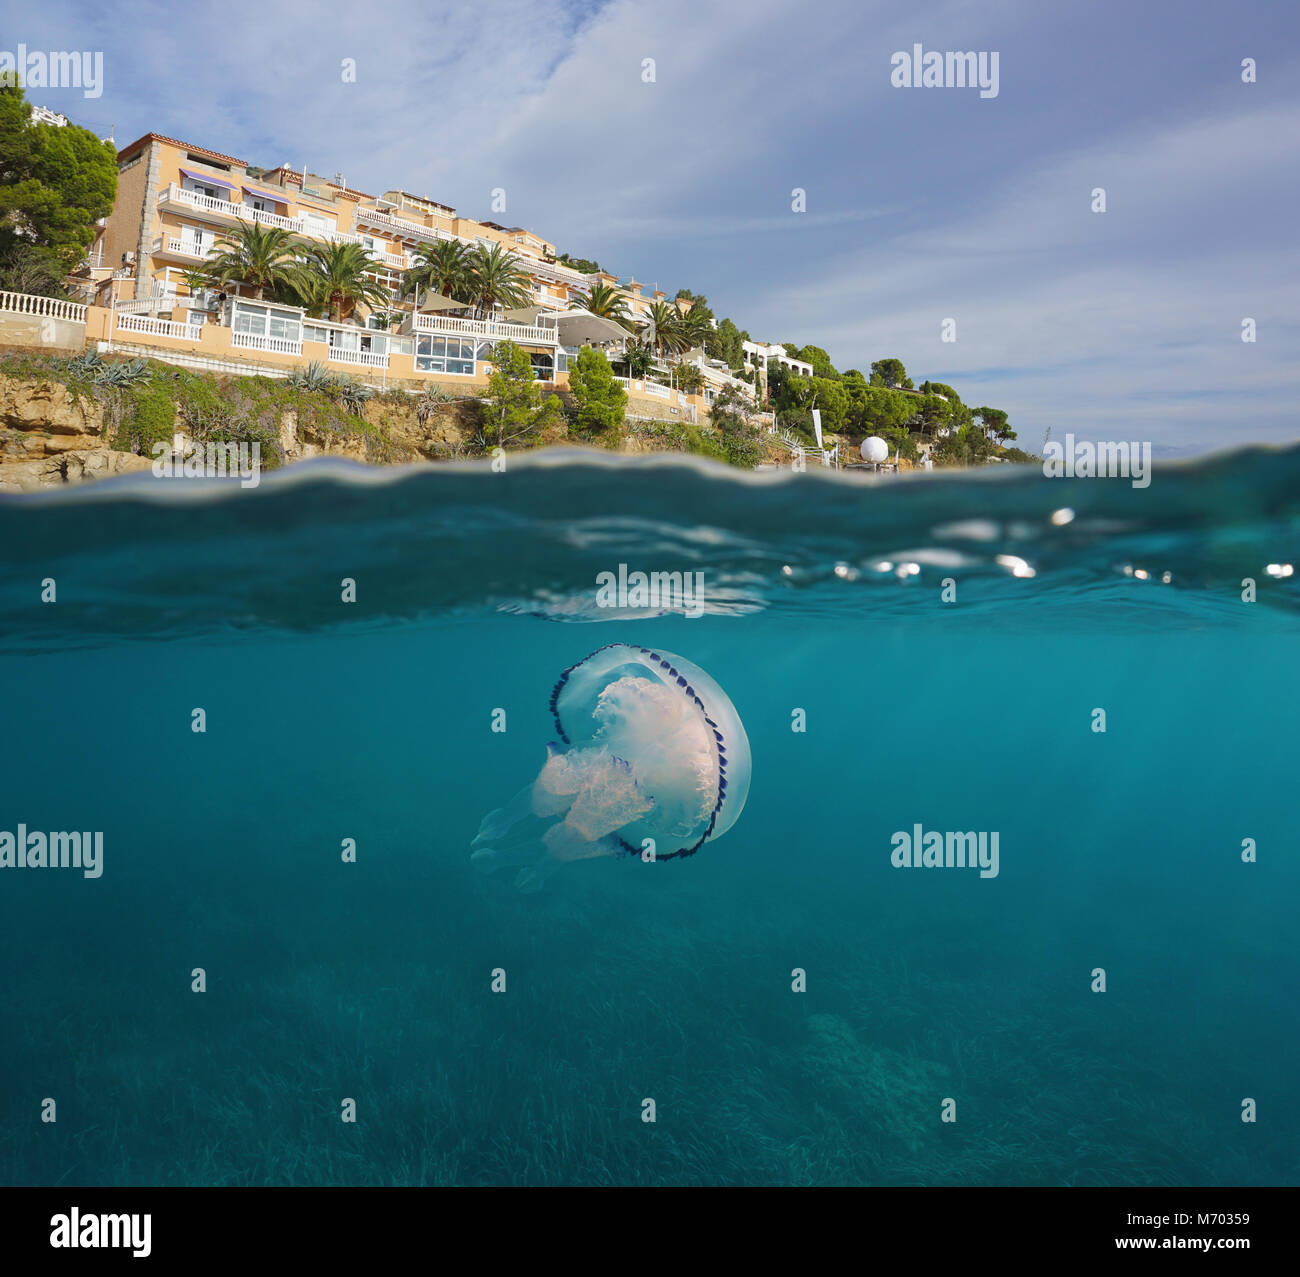 Hotel en la costa del mar Mediterráneo con unas medusas submarinas, vista dividida por encima y por debajo de la superficie del agua, España, Costa Brava, Cataluña Foto de stock